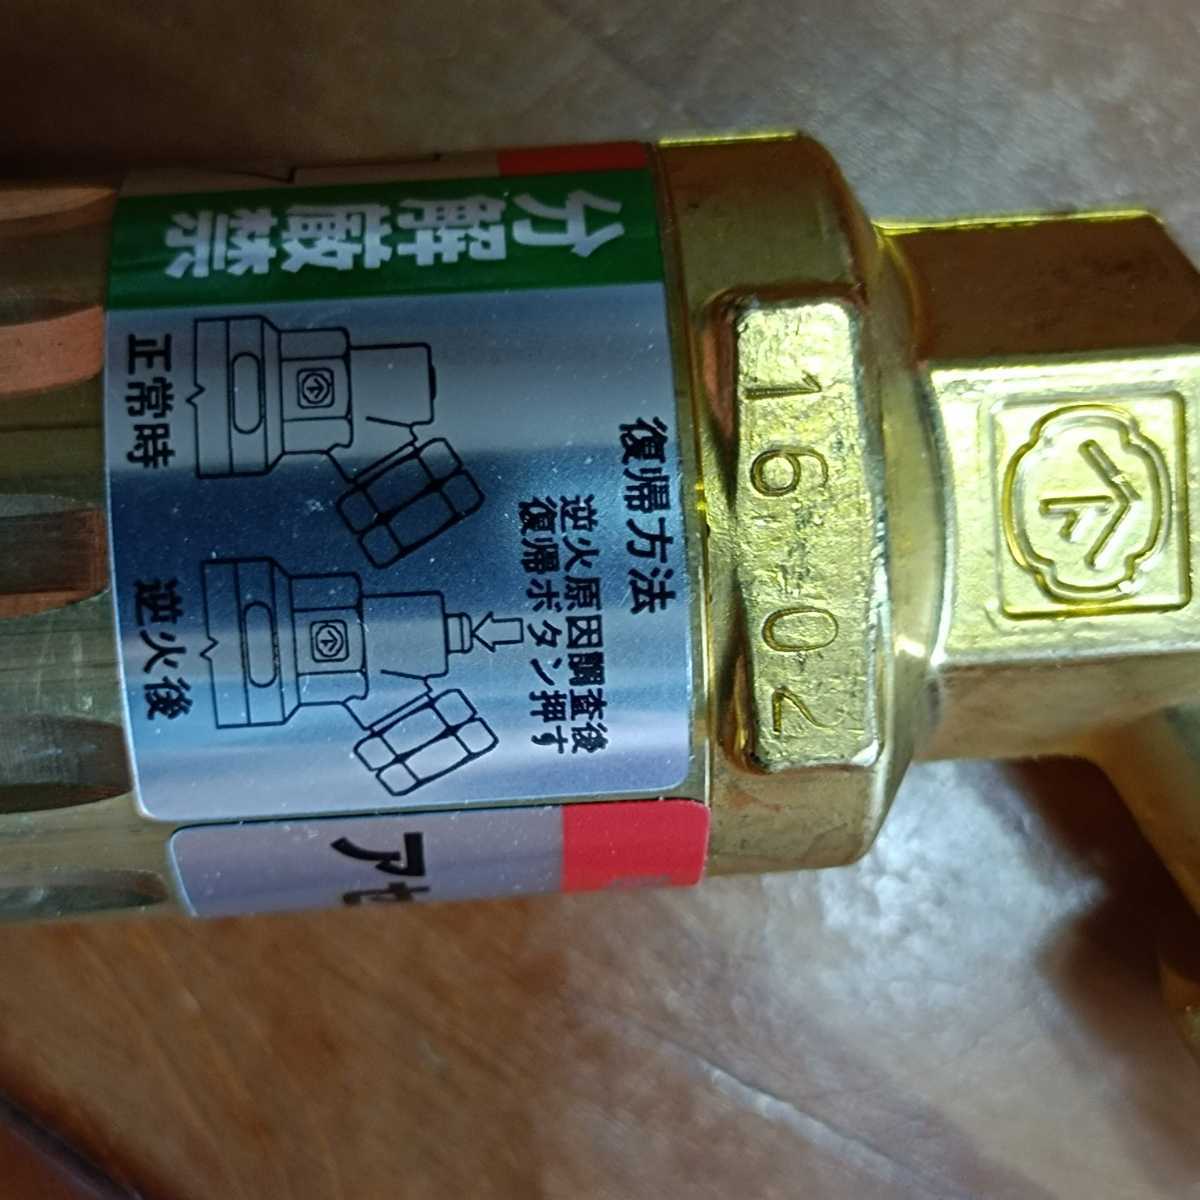  не использовался, Yamato промышленность кружка кнопка сухой безопасность контейнер выцветание chi Len для MPF-1, обратный огонь предотвращение оборудование, сварка сопутствующие товары 